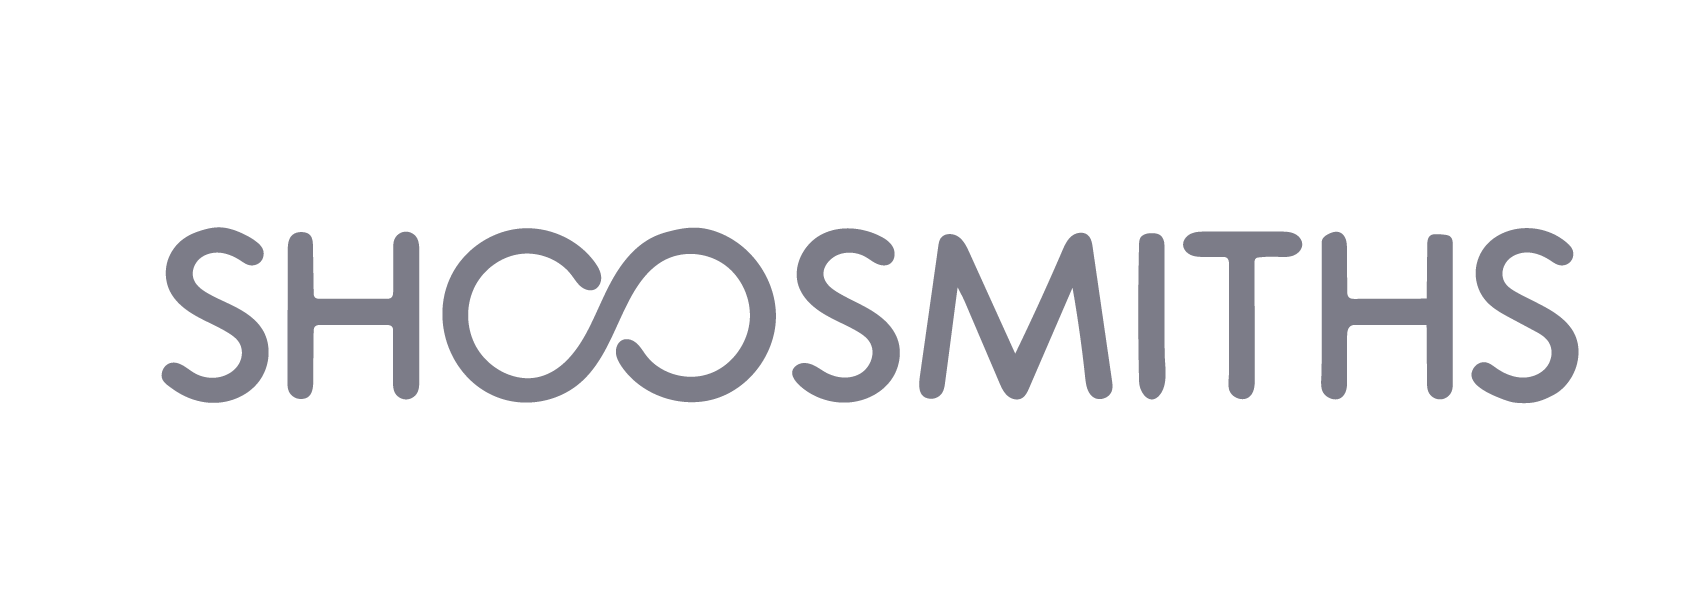 soosmiths-logo-6